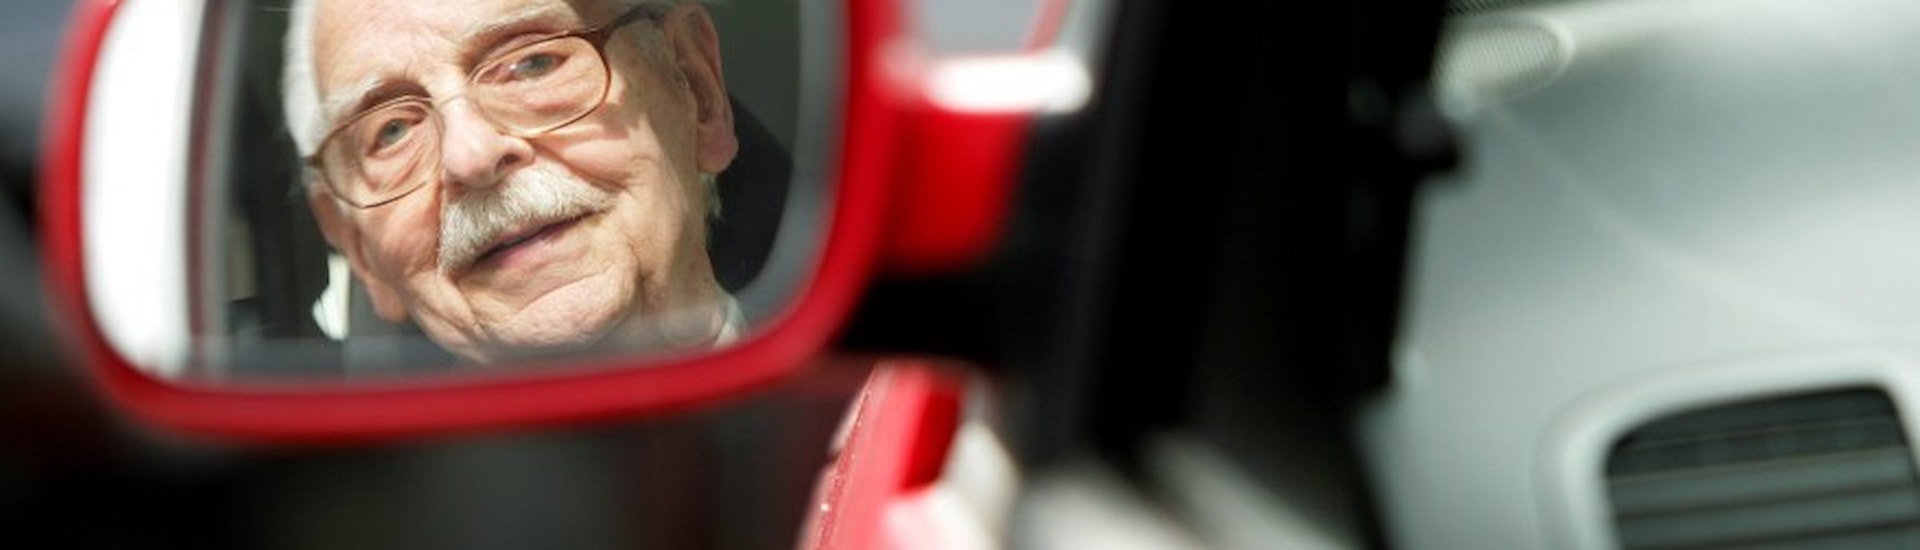 Autofahrende Senioren müssen ab 75 Jahren zum Medizincheck